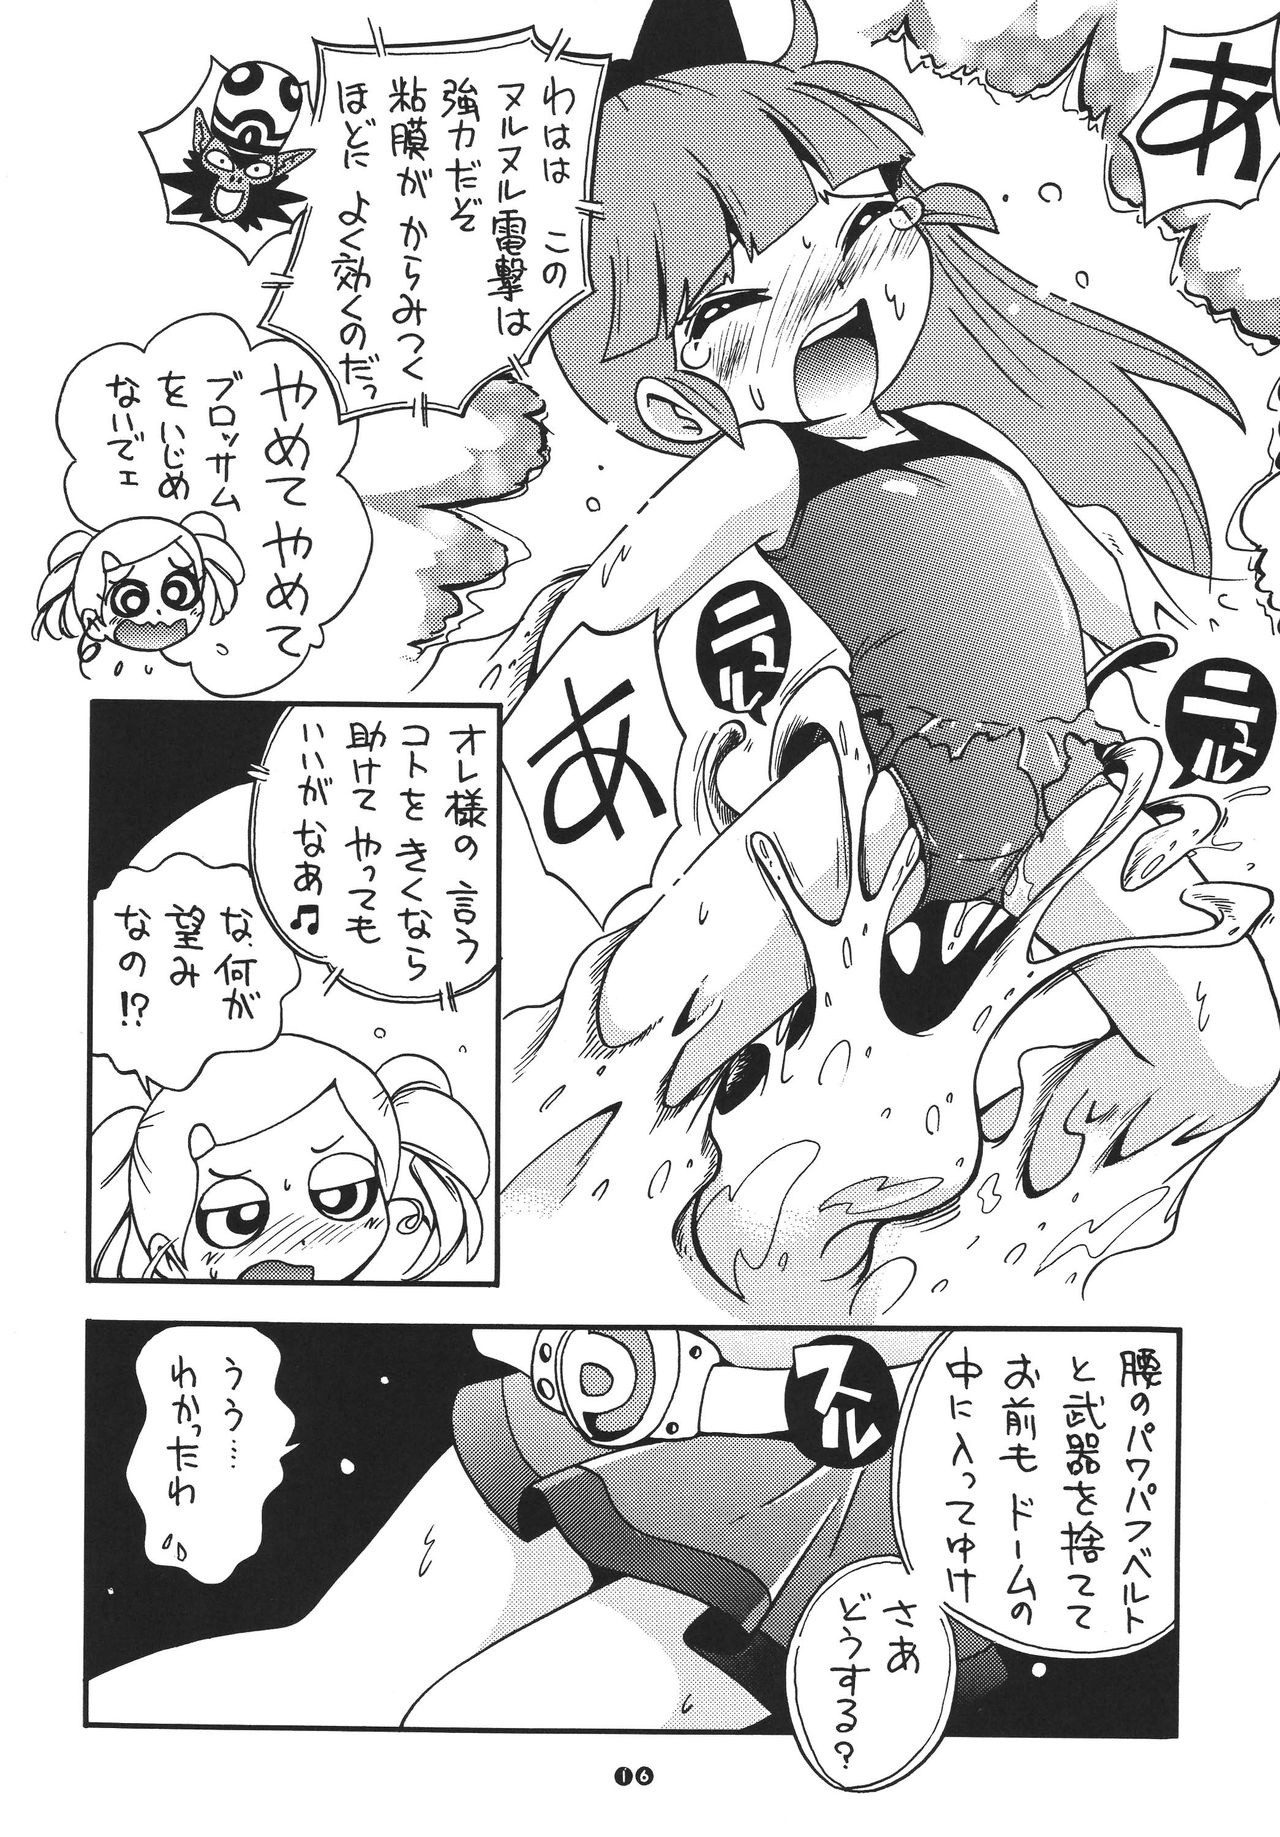 Demashita Power Puff Girls Z hentai manga picture 13